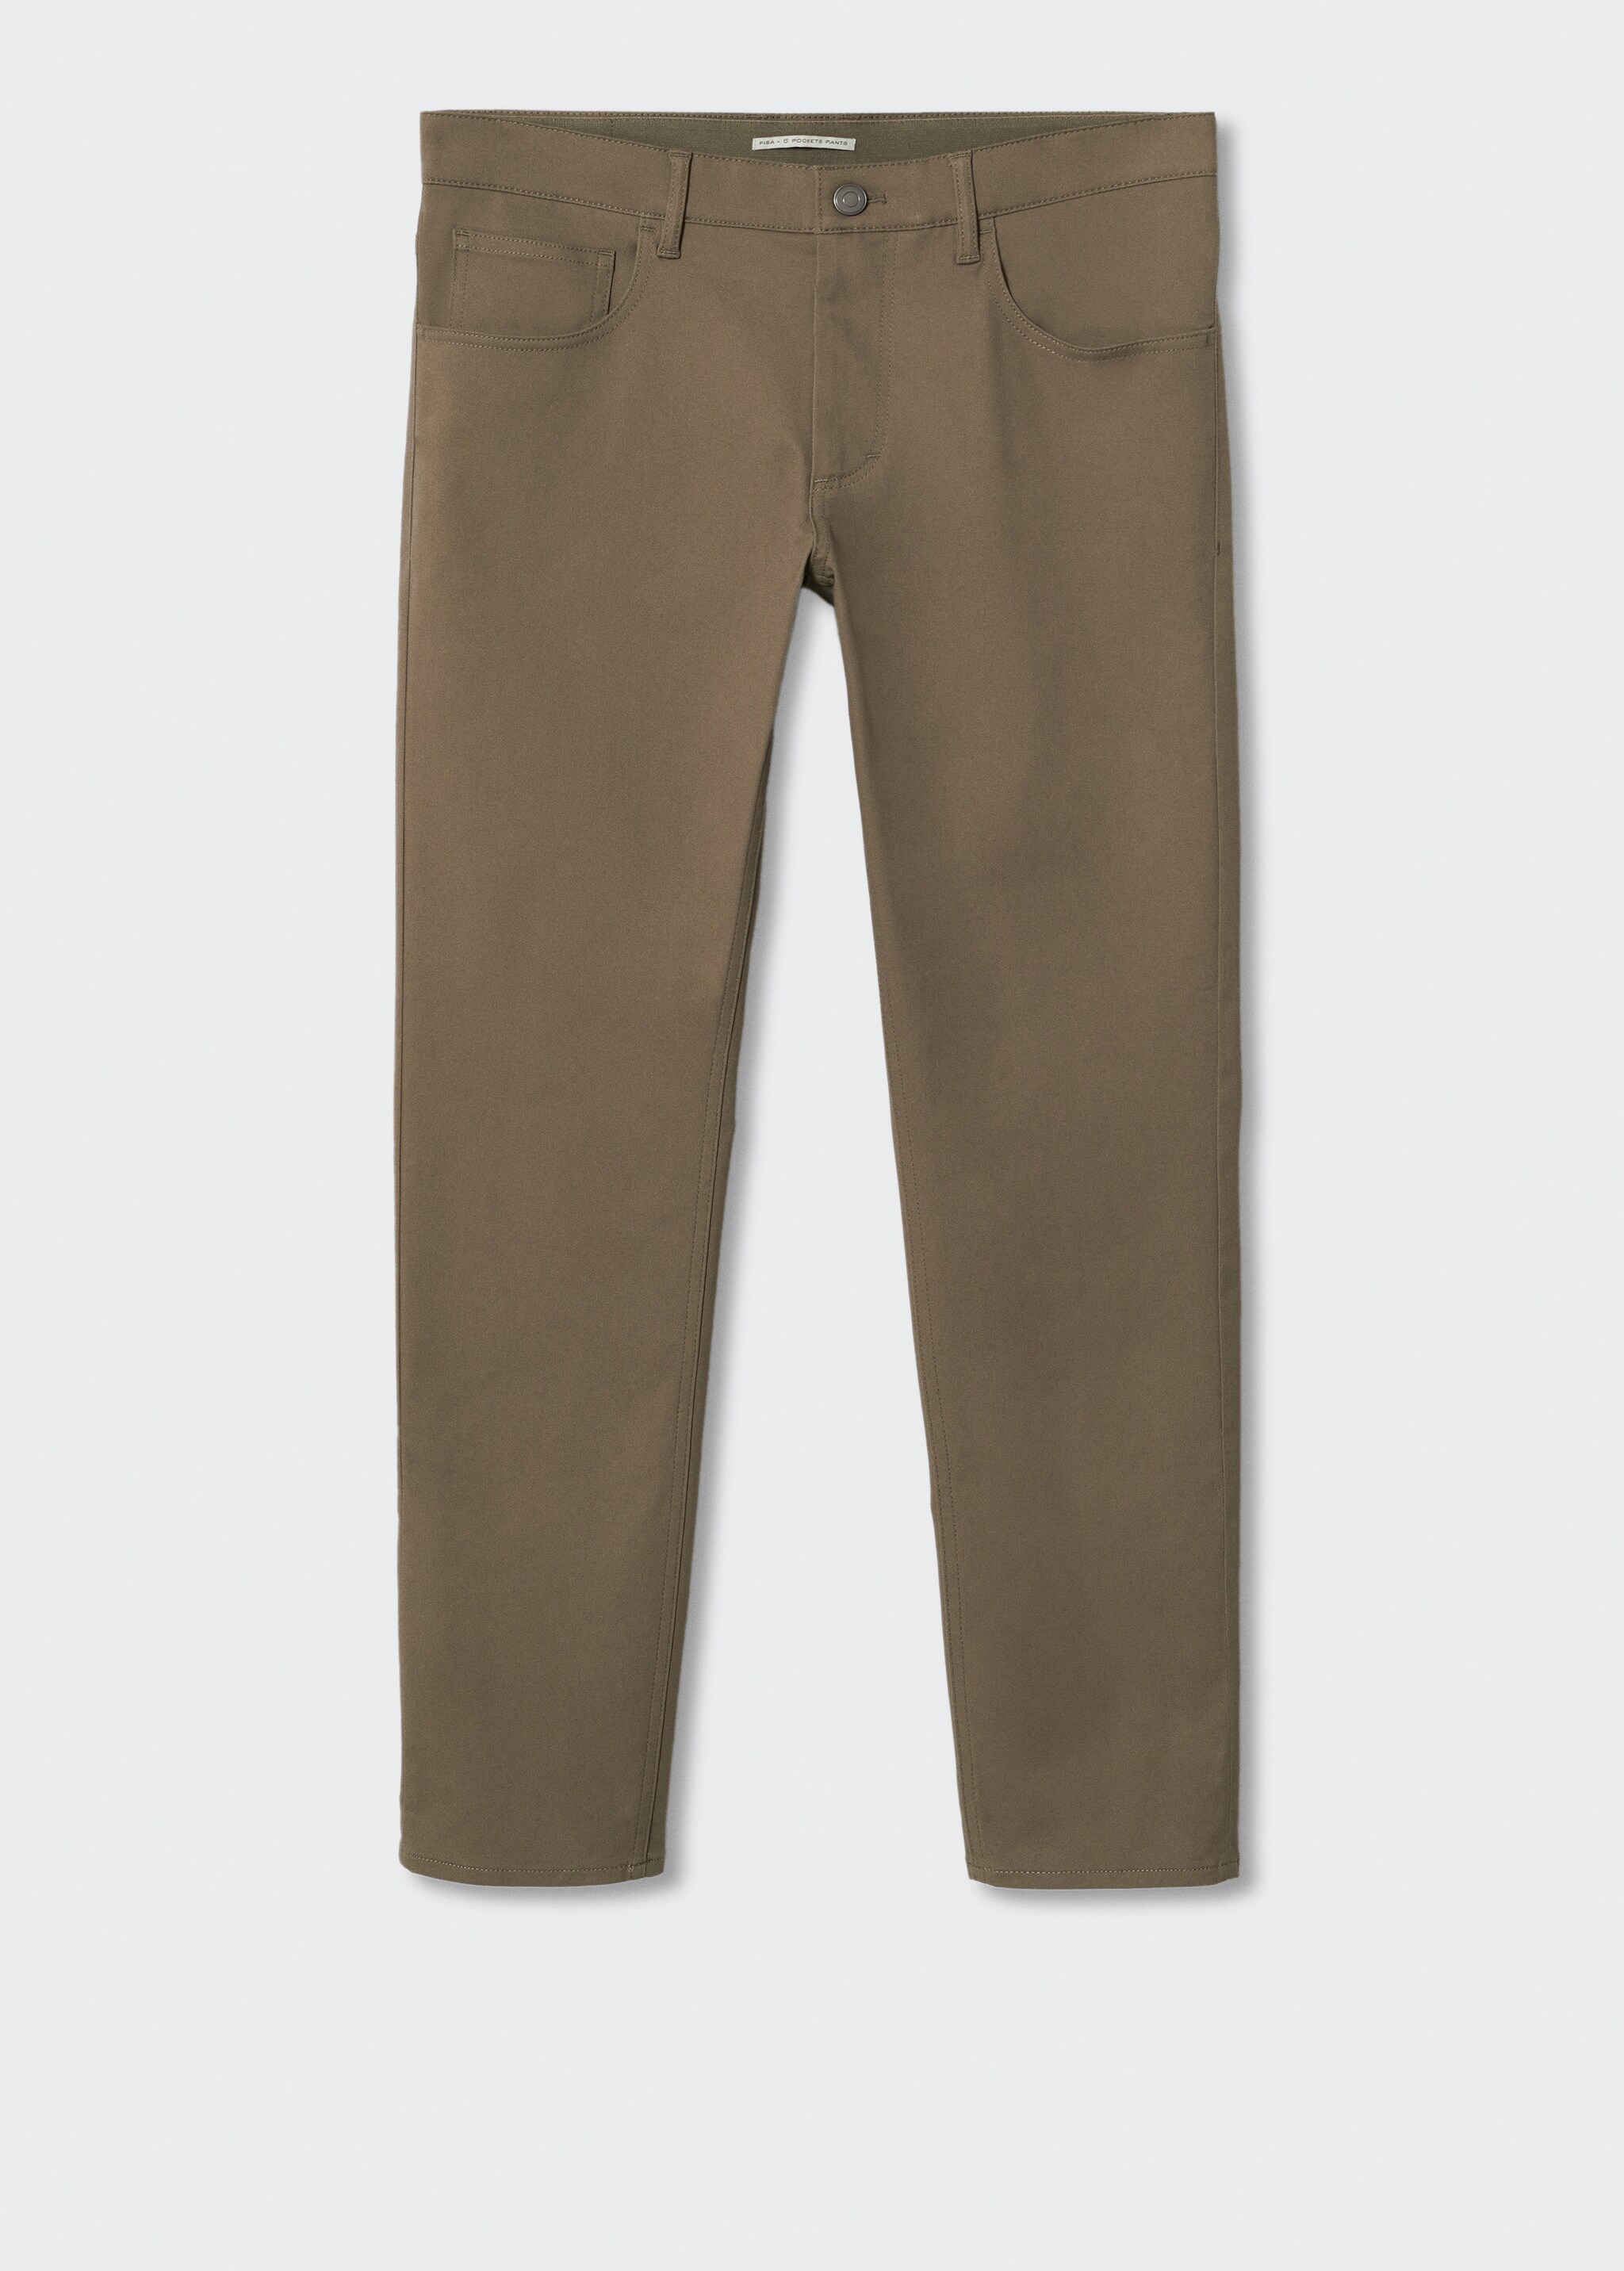 Pantalón tejanero slim fit sarga - Artículo sin modelo